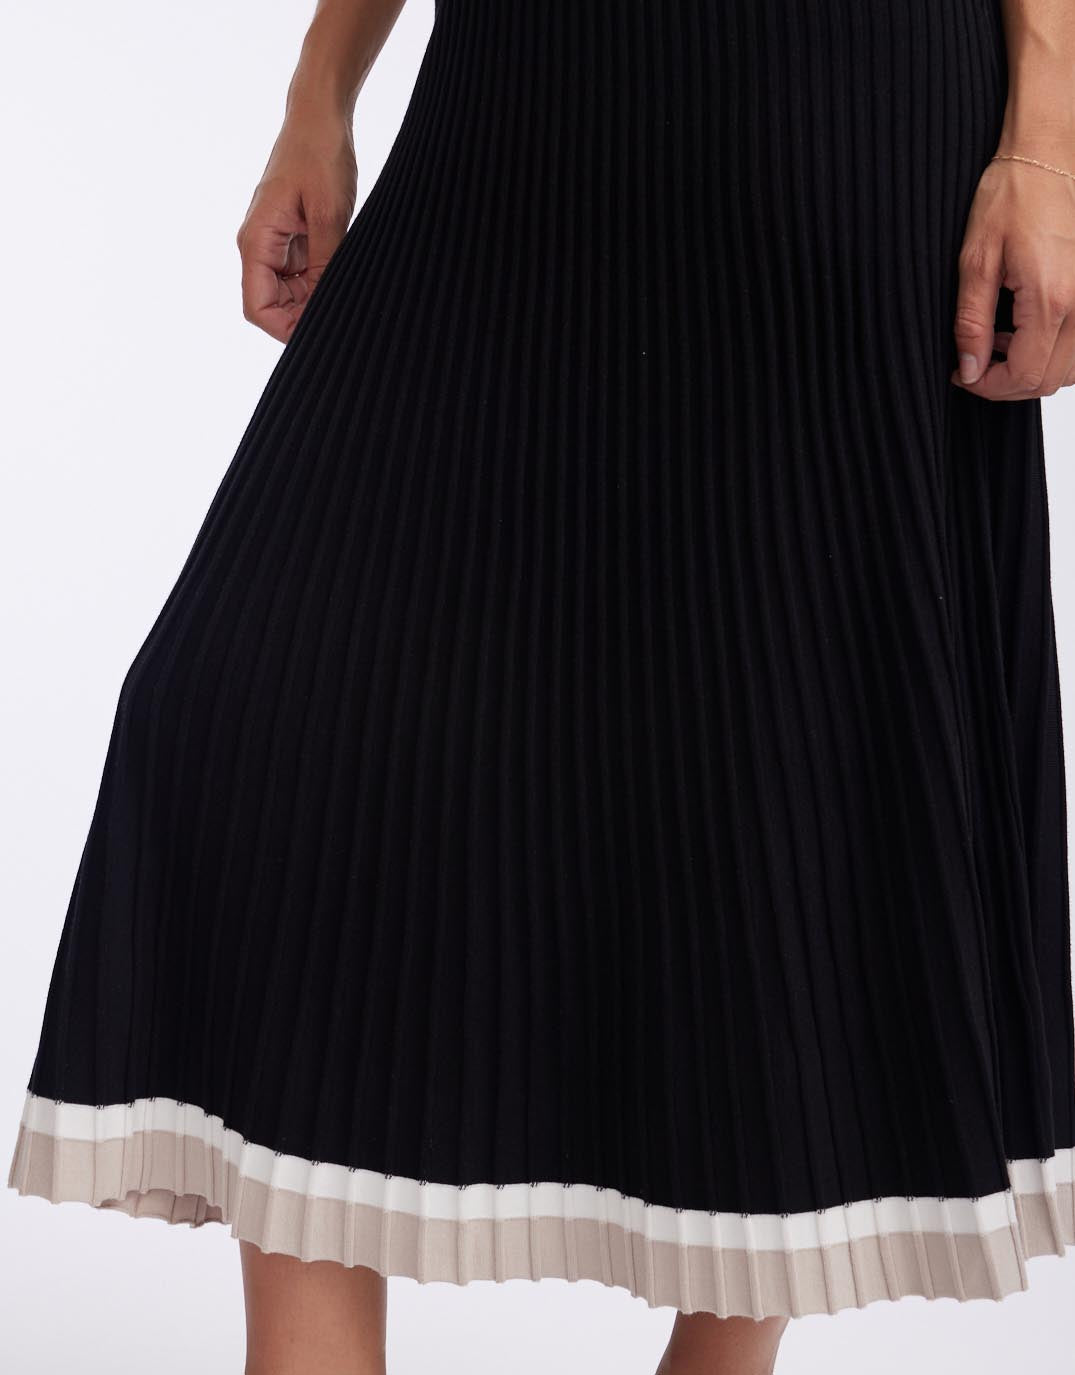 White & Co. - Giselle Rib Skirt - Black/Oat/White - White & Co Living Skirts